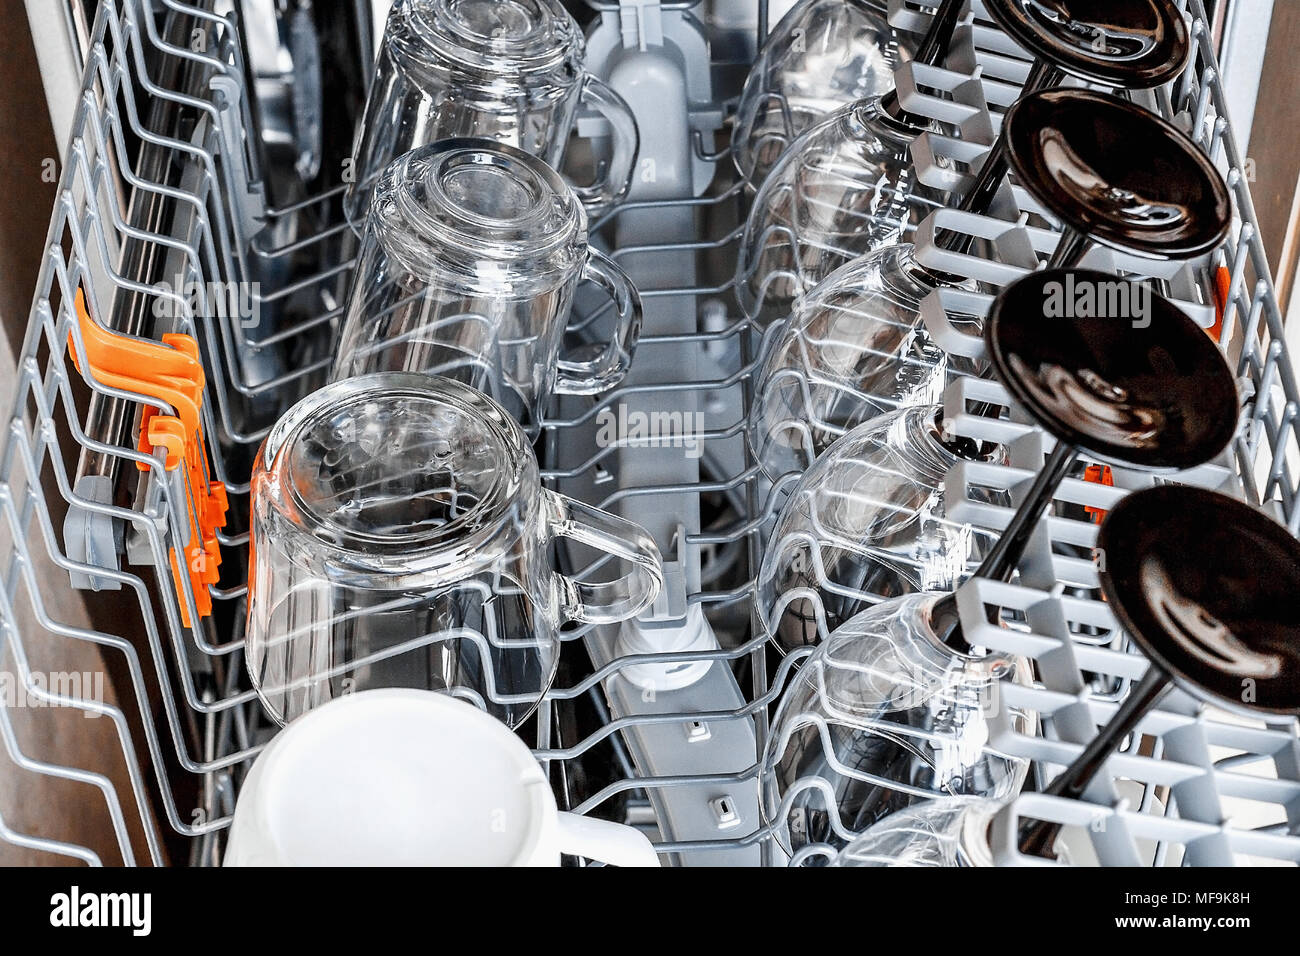 Ouvrir avec lave-vaisselle et vaisselle en verre propre, selective focus, nettoyer les verres après lavage au lave-vaisselle. Banque D'Images